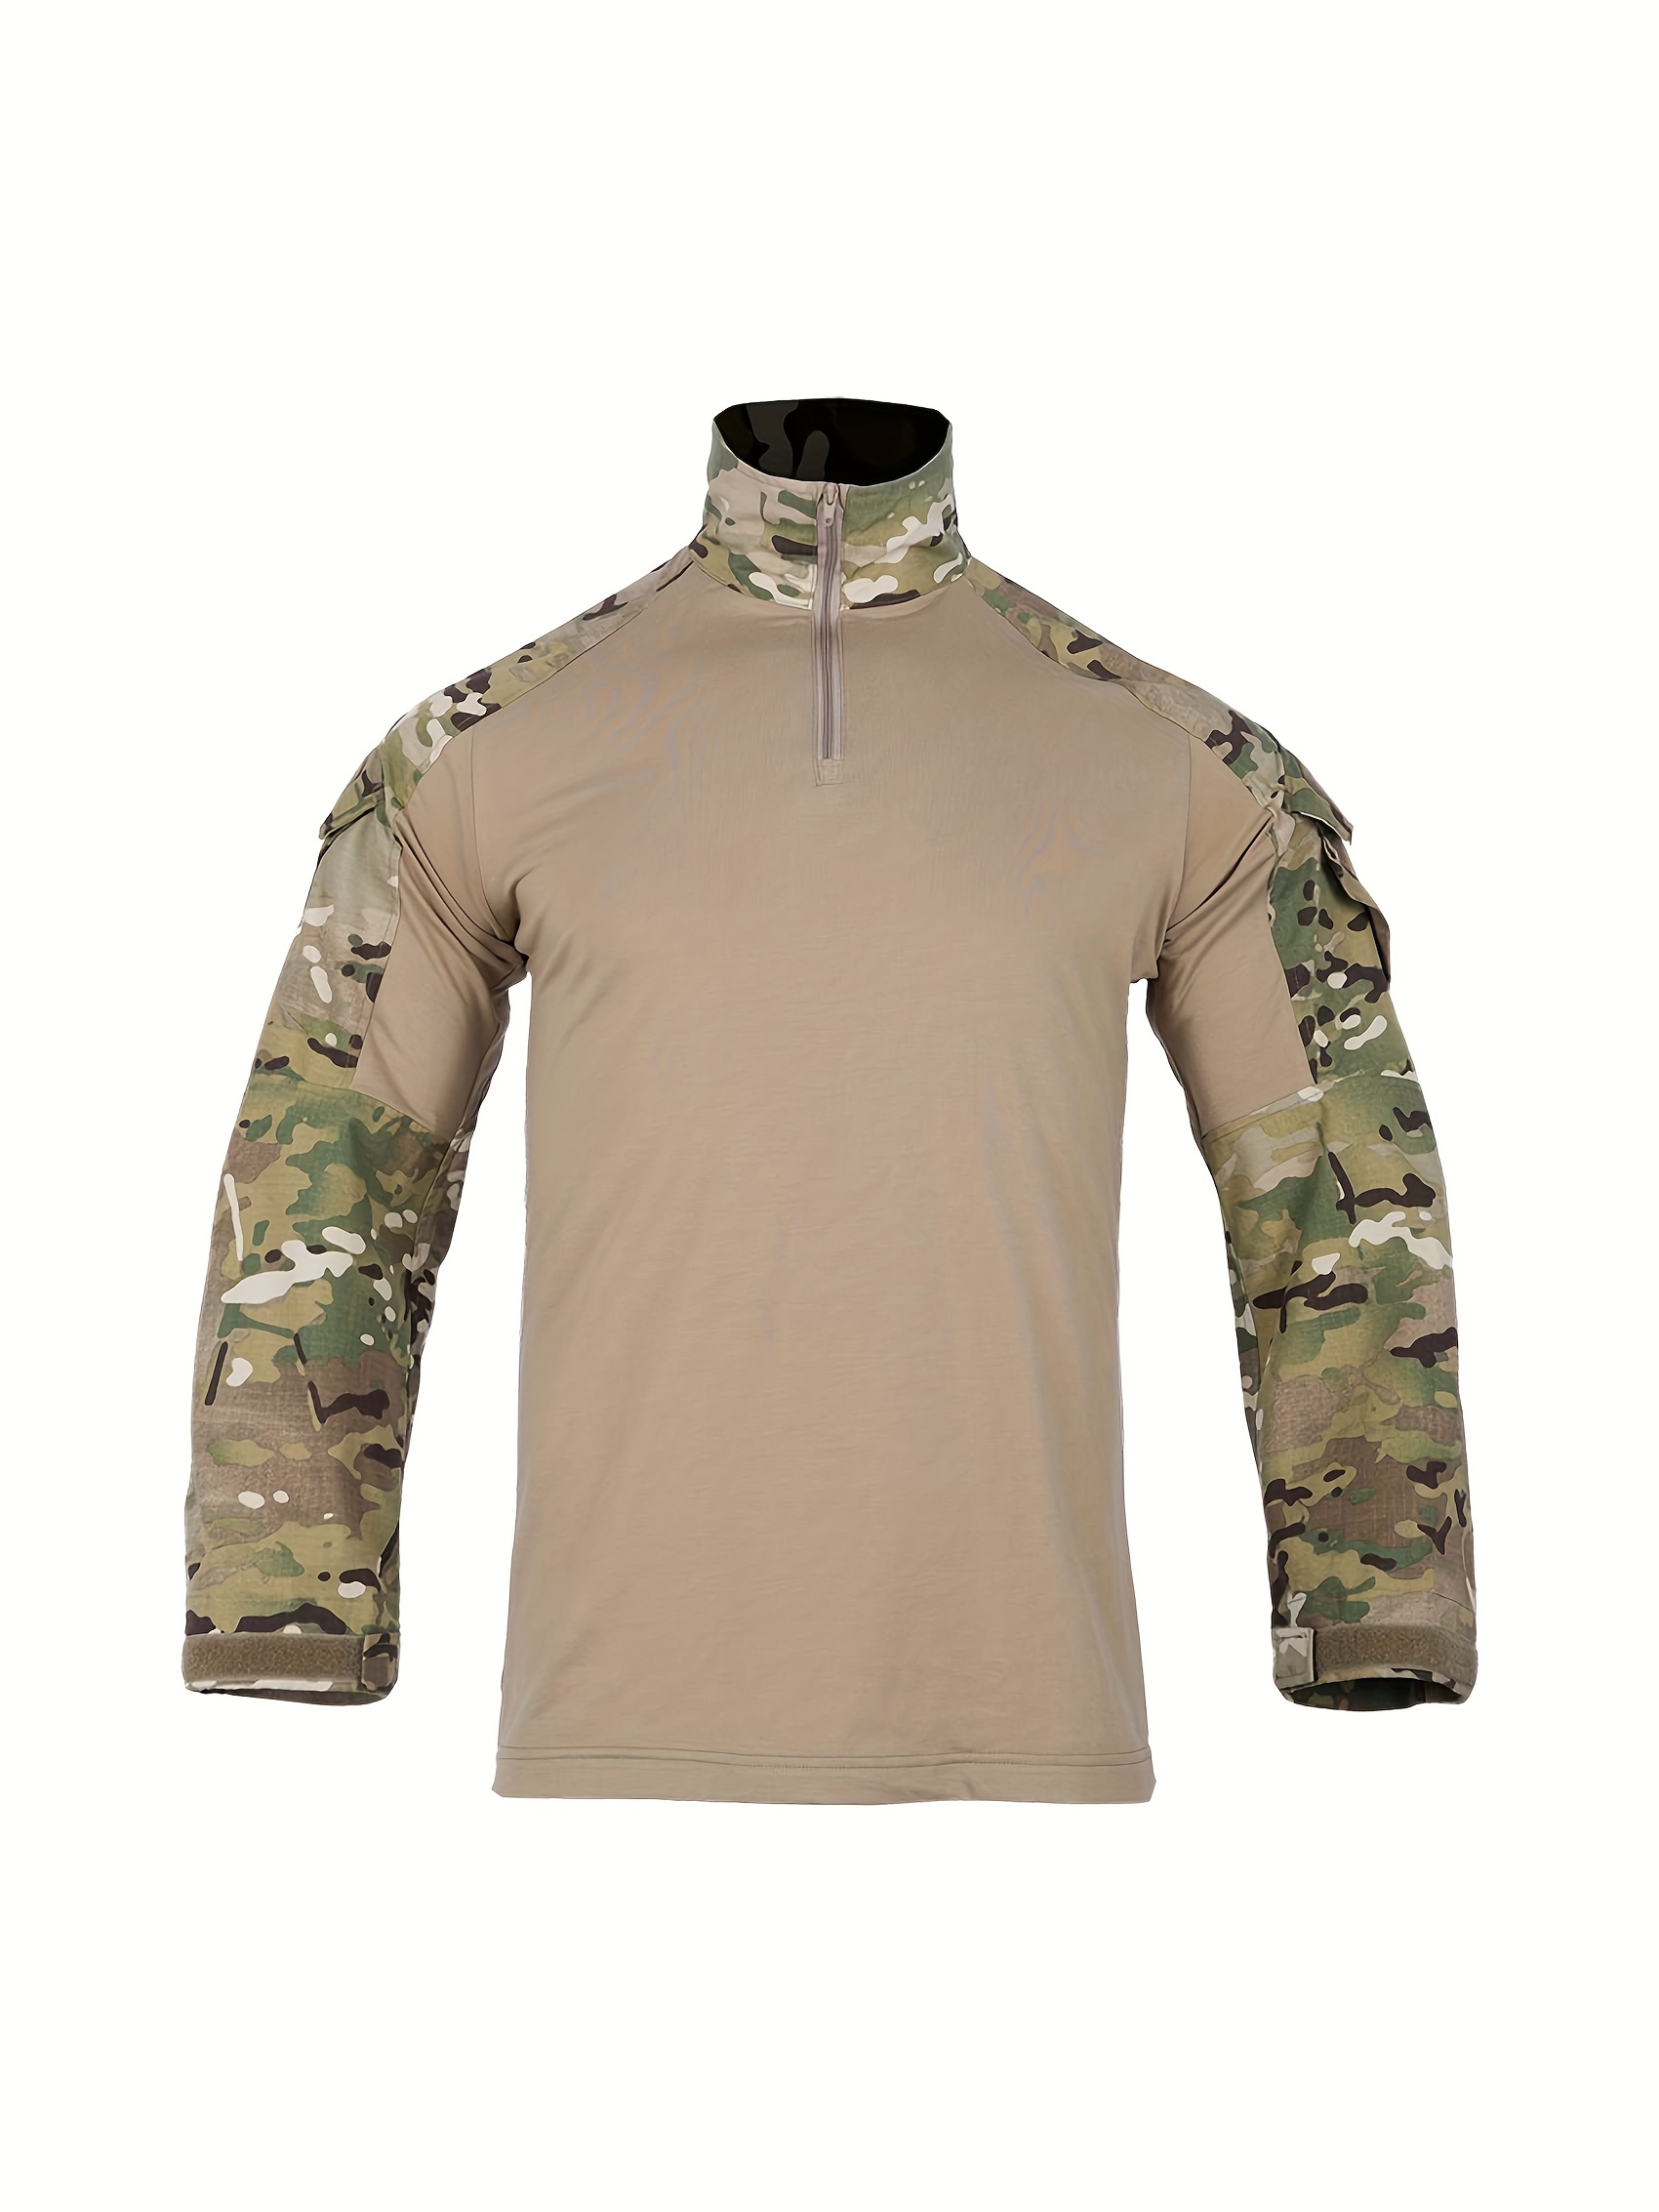 Mens Army Tactical Military Combat T-shirts Long Shirt Camouflage Shirts  Camping Hunting Clothes Climbing Fishing Men Clothing